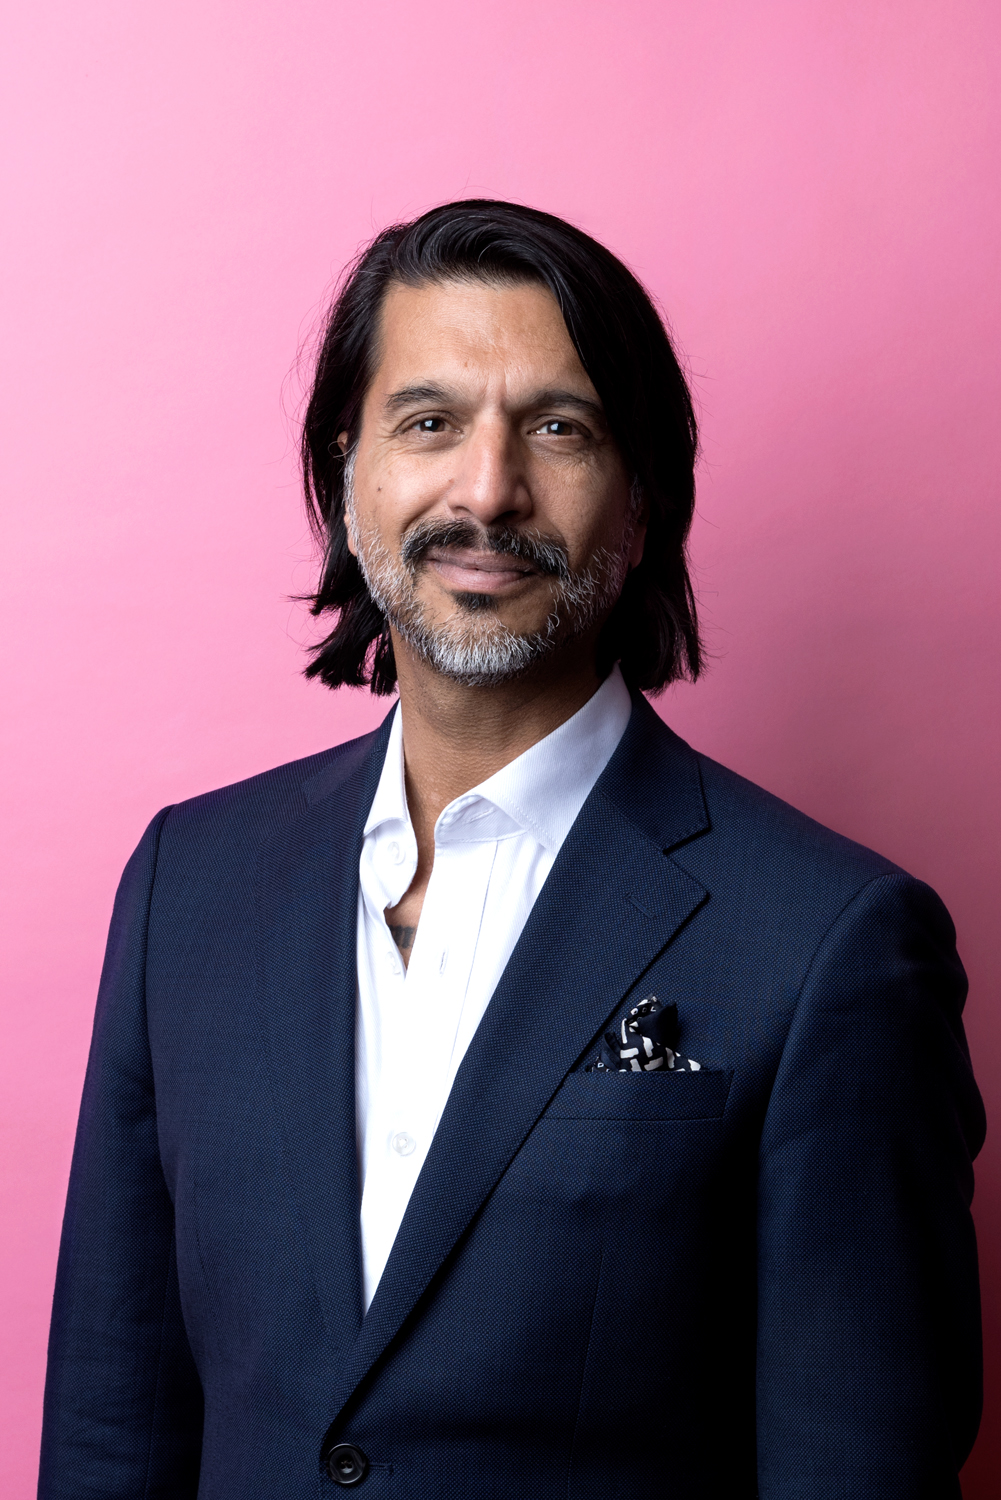 Porträttbild Qaisar Mahmood. Qaisar har axellångt mörkt hår, han är iklädd vit skjorta och mörkblå kavaj.